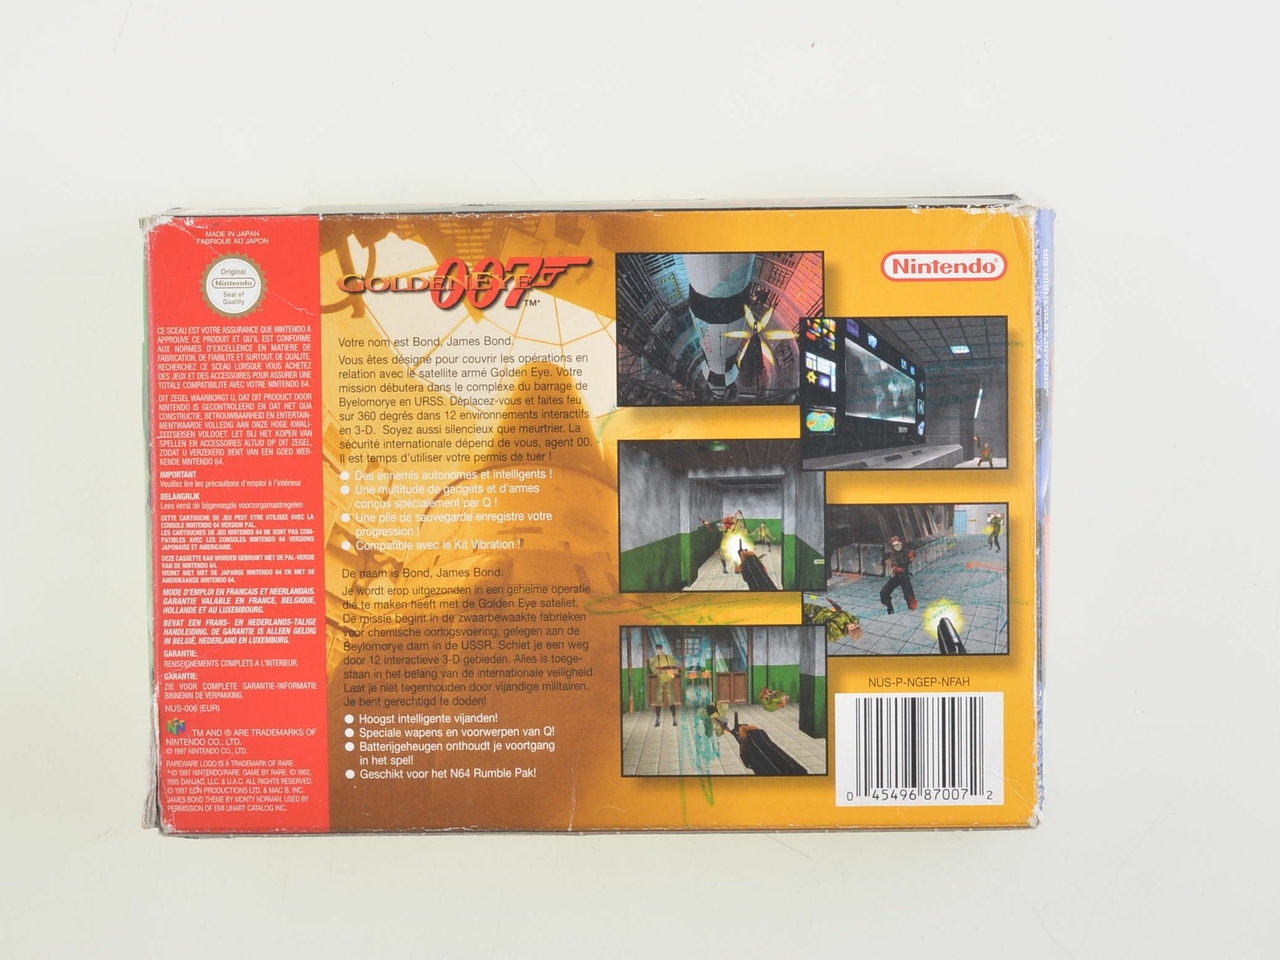 007 Goldeneye - Nintendo 64 Games [Complete] - 2